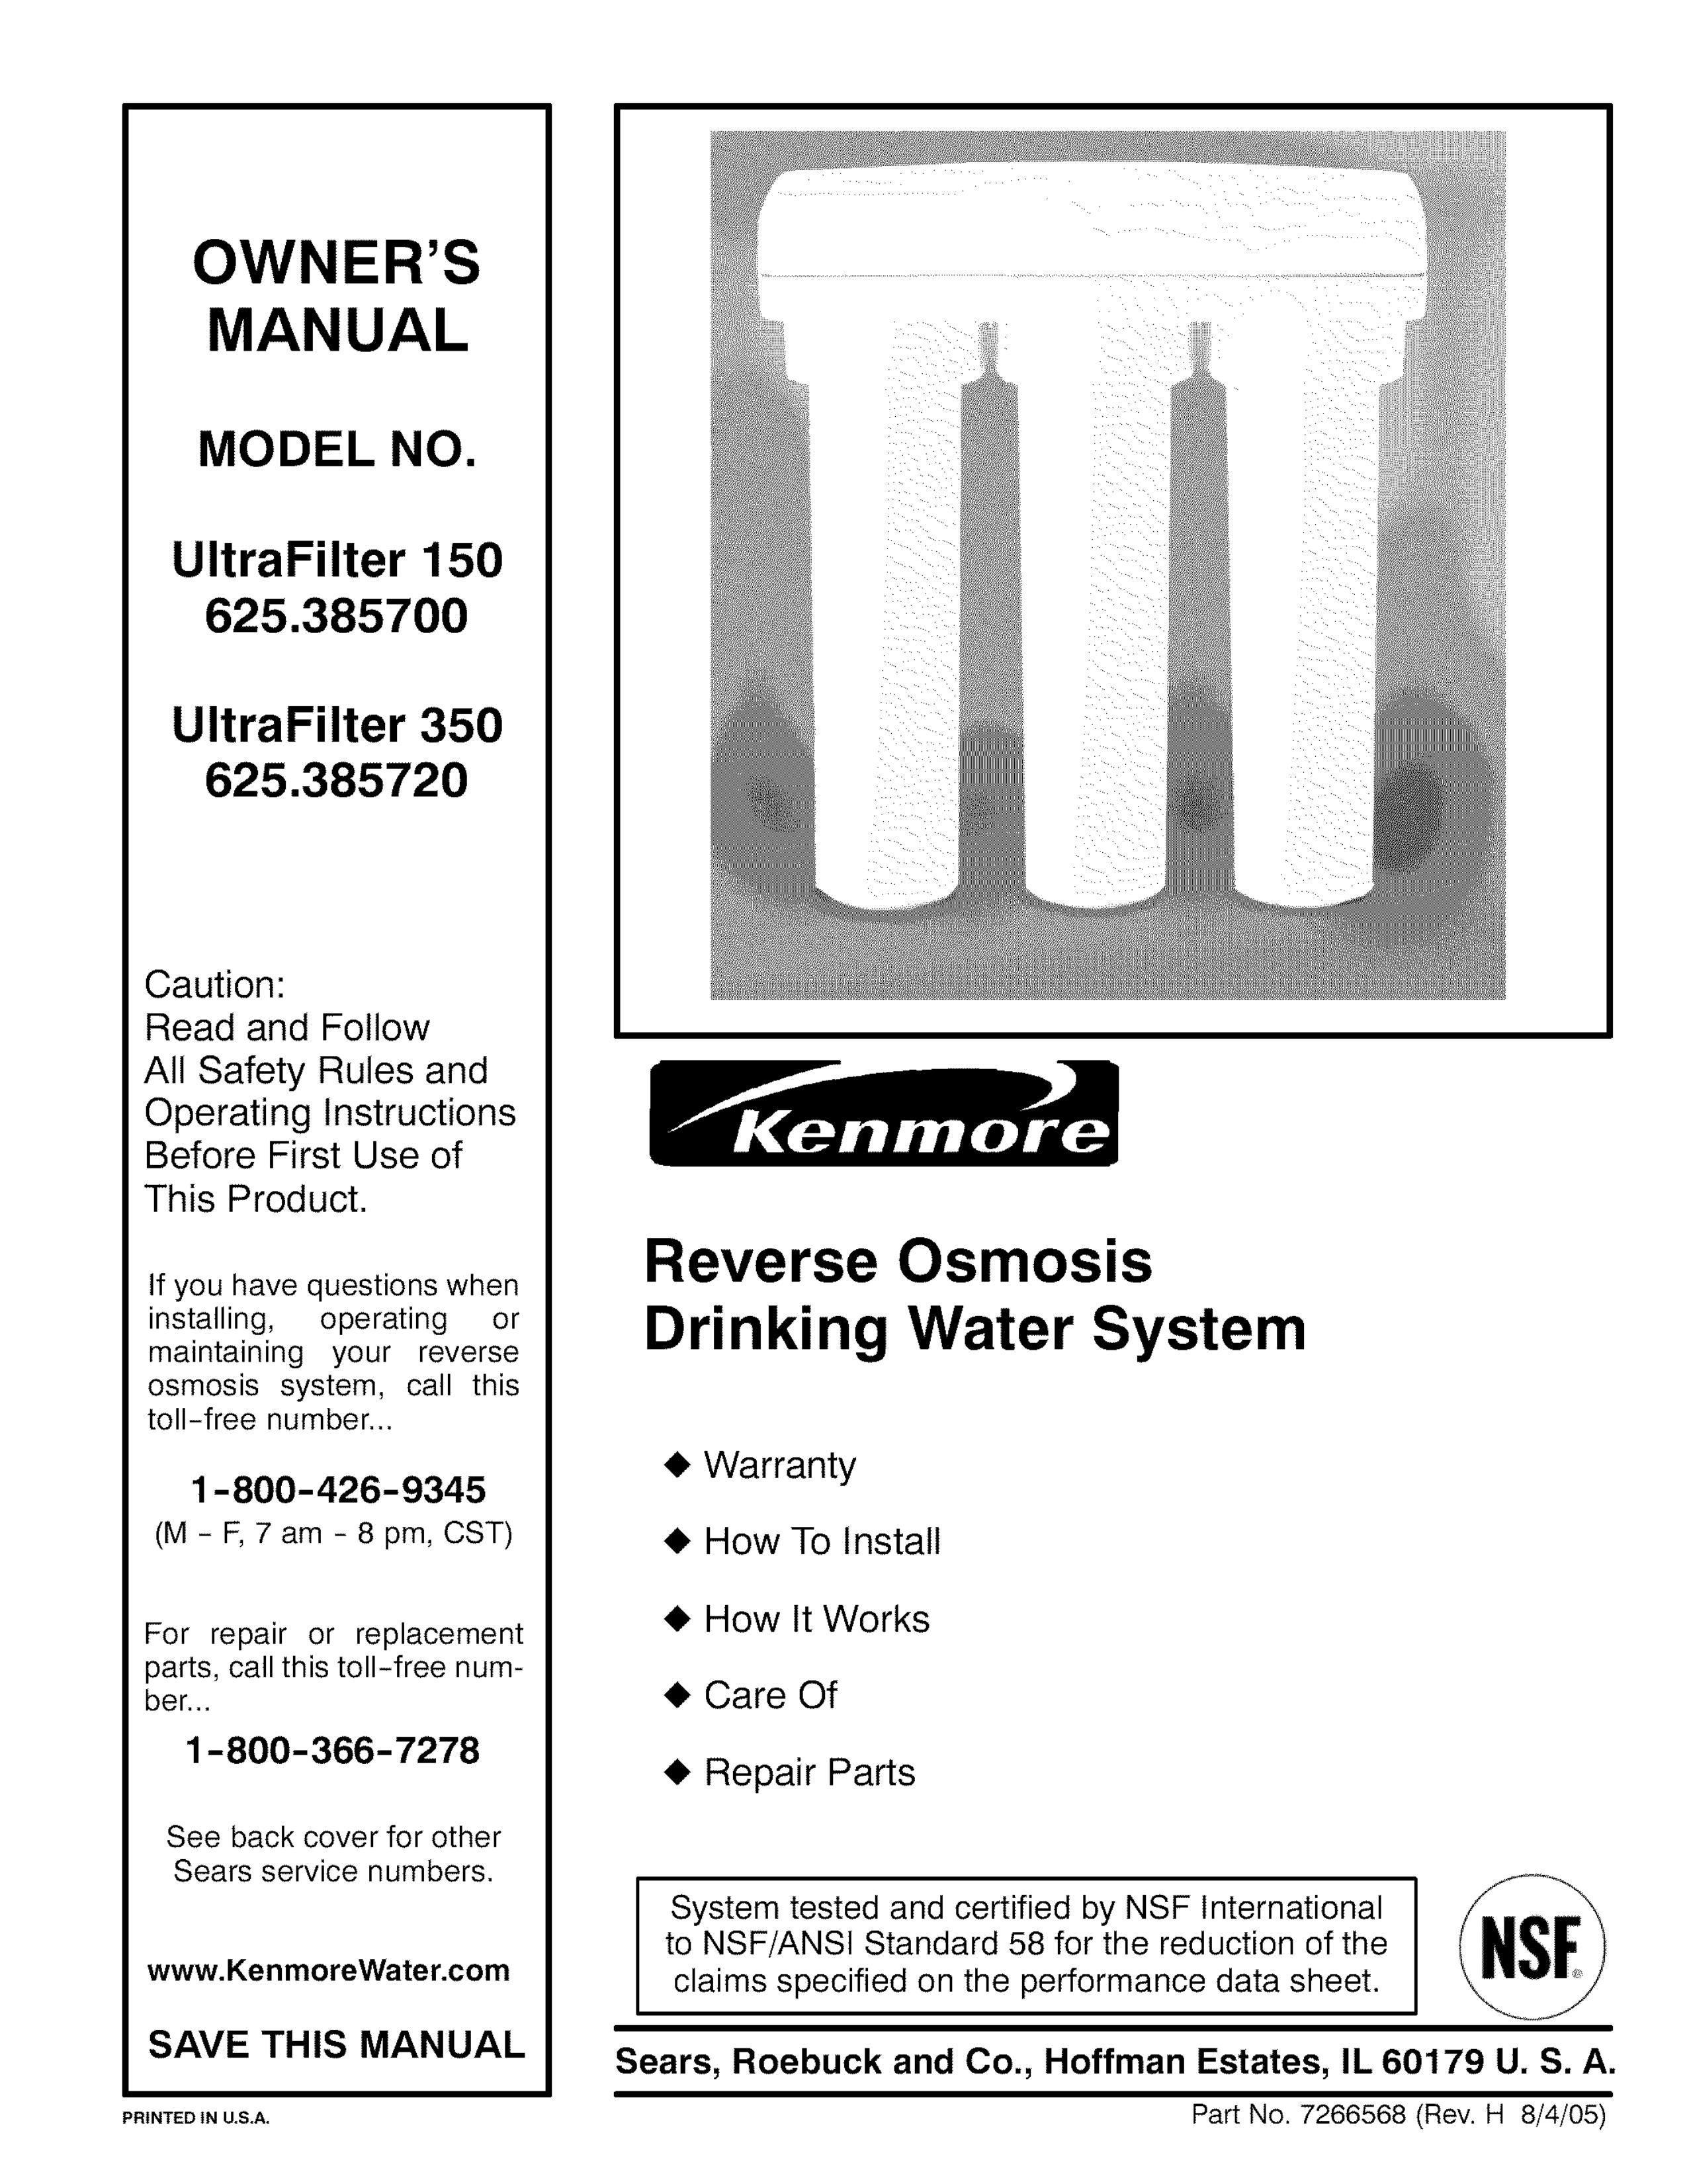 Kenmore 625.385720 Water Dispenser User Manual